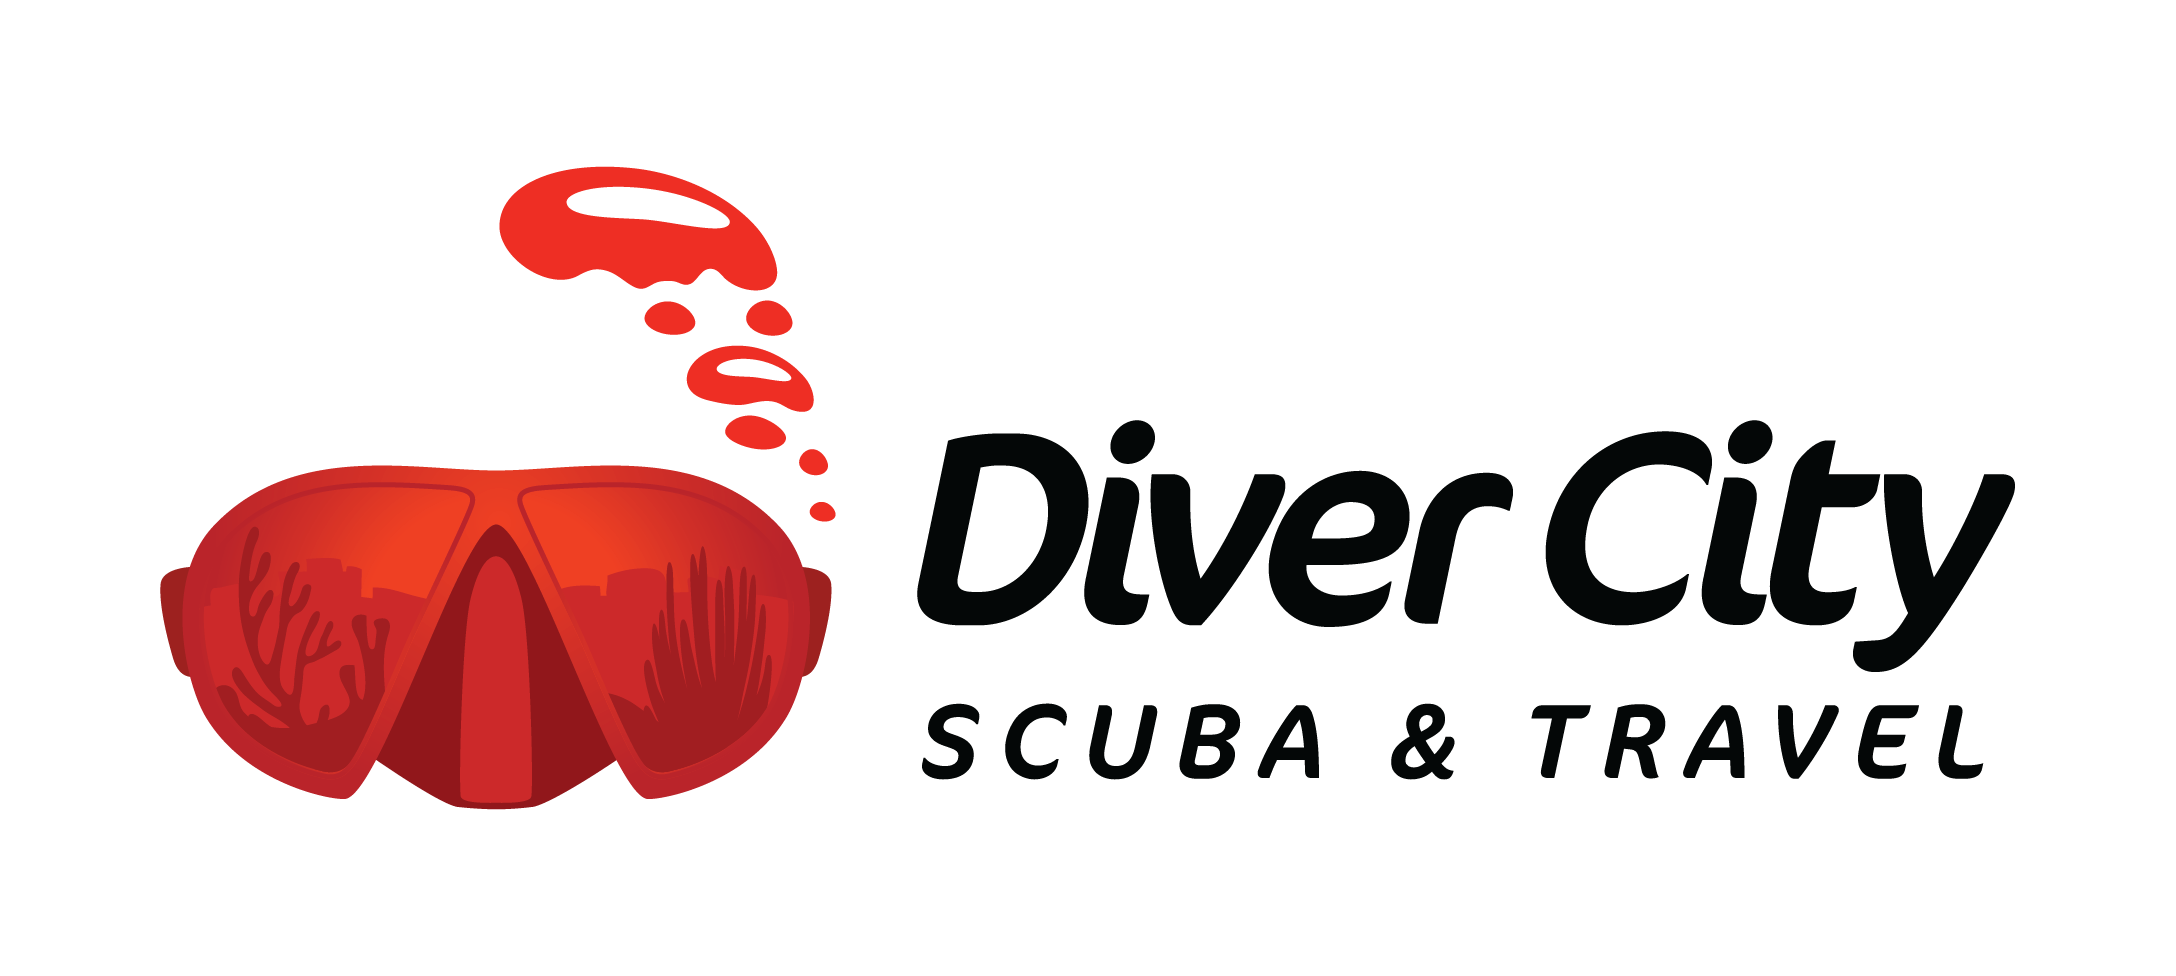 Diver City Scuba